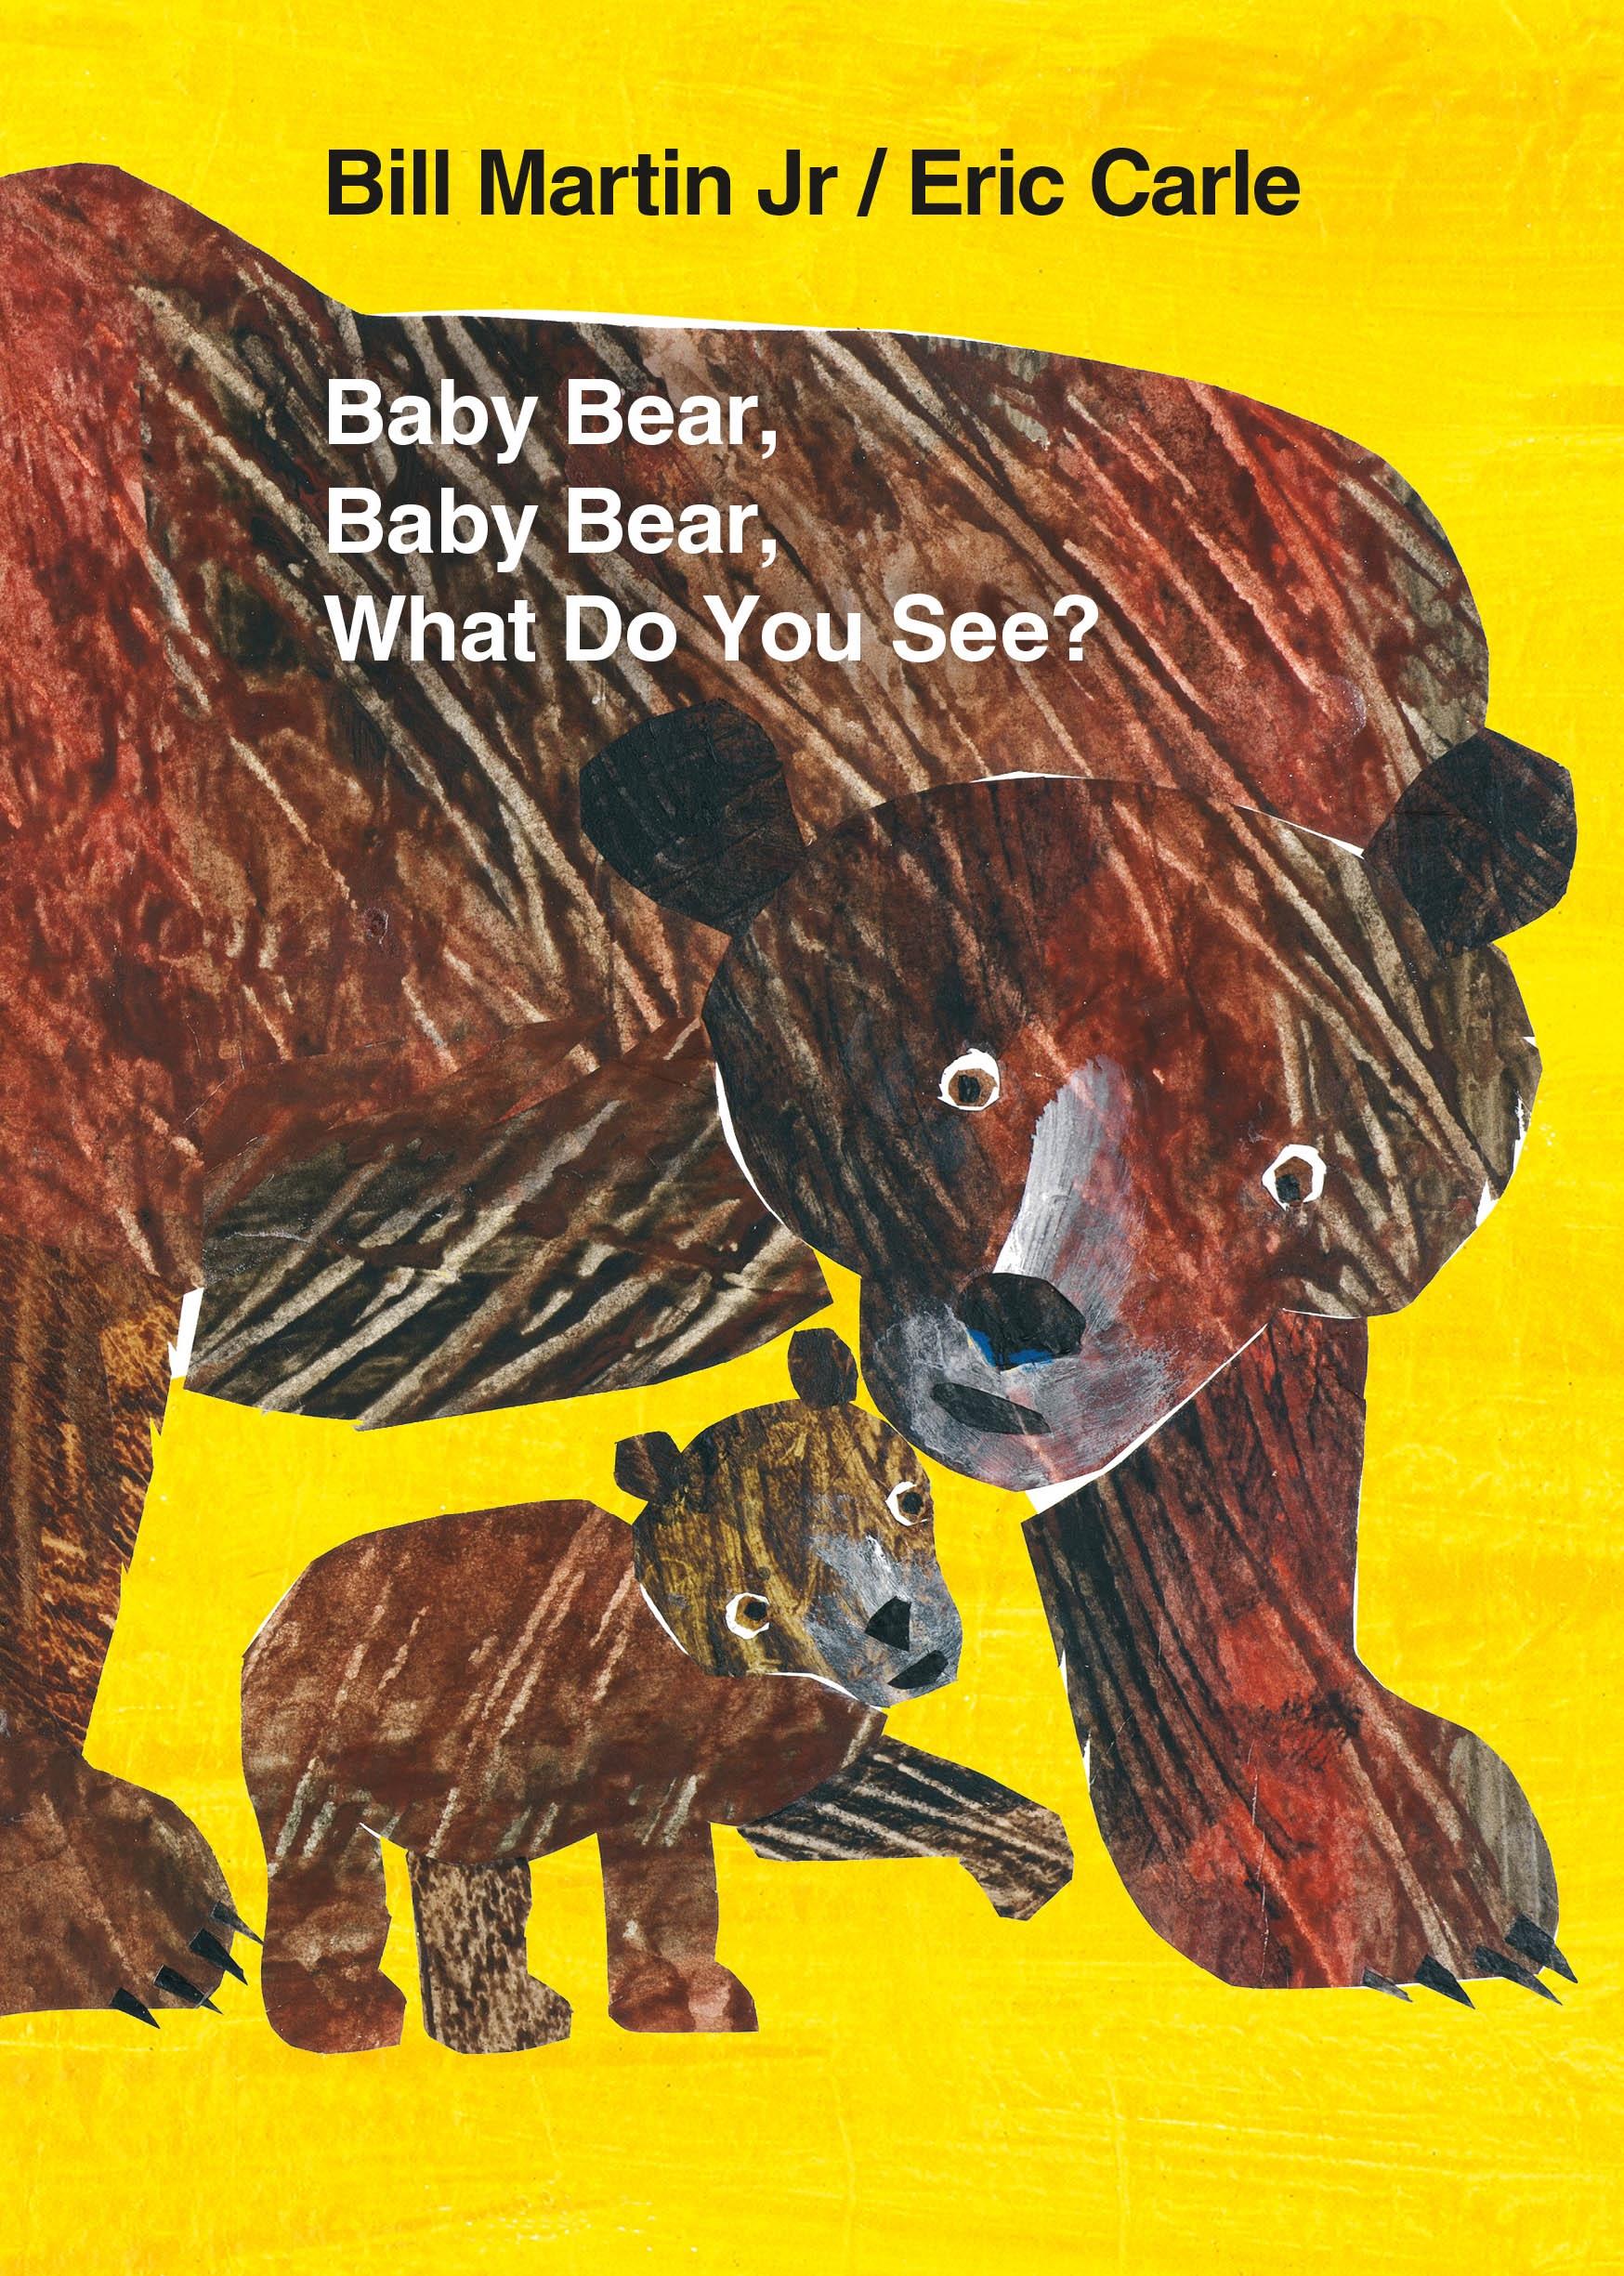 Baby Bear, Baby Bear, What Do You See? Board Book / Jr. Bill Martin / Buch / Papp-Bilderbuch / Englisch / 2009 / Henry Holt and Co. (BYR) / EAN 9780805089905 - Bill Martin, Jr.